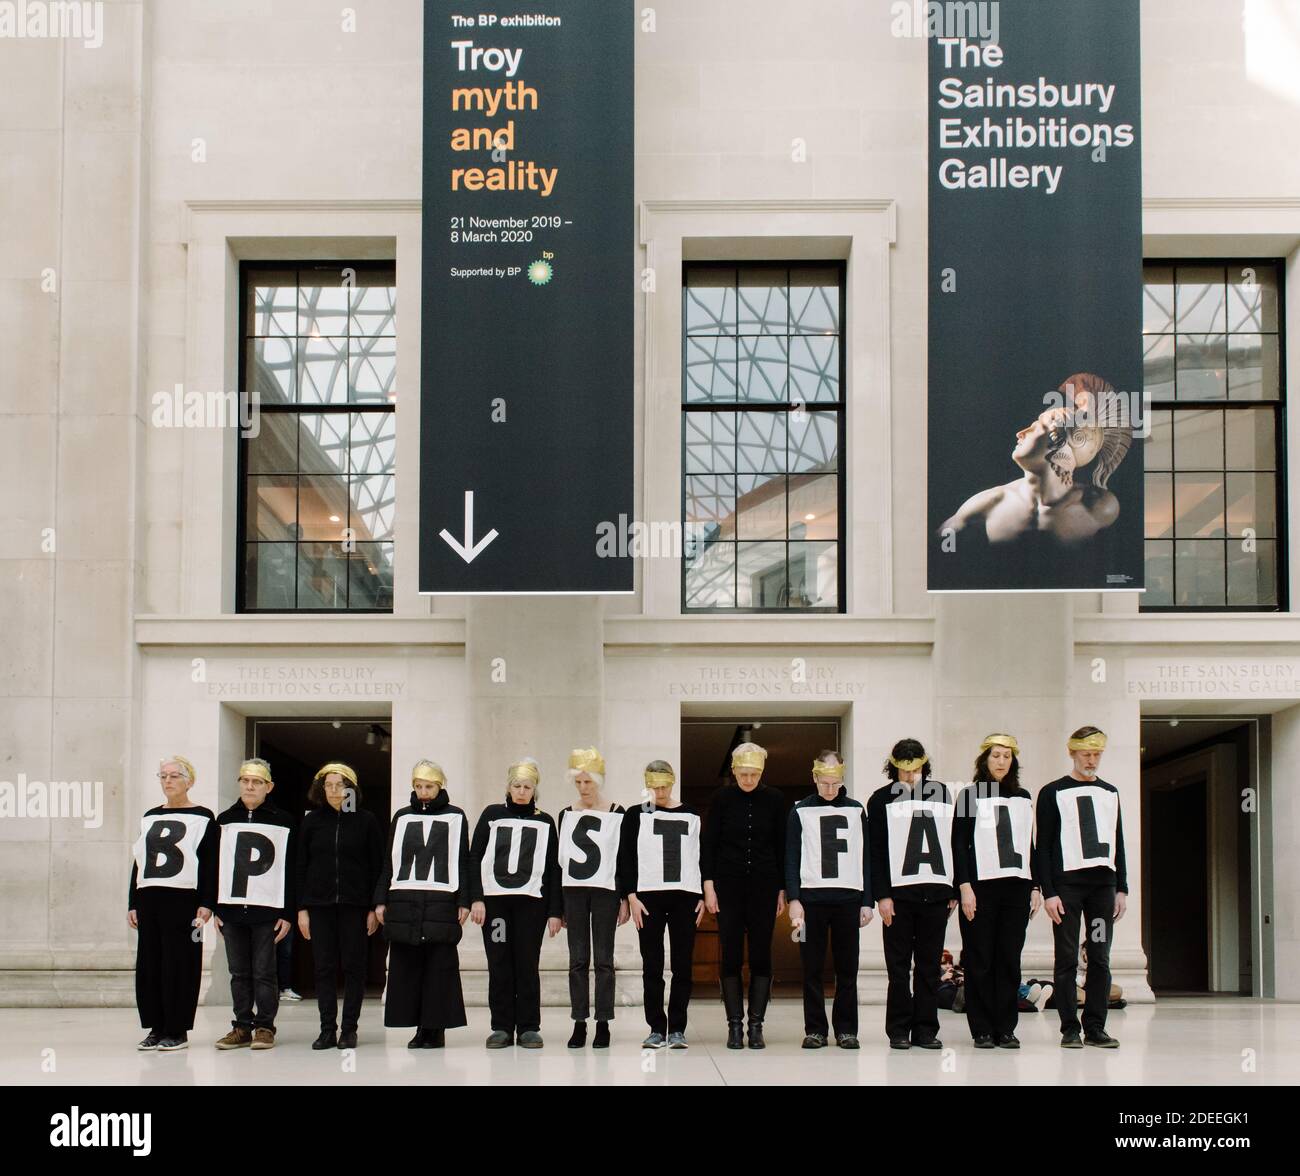 Londres, Royaume-Uni - 8 février 2020 : BP doit tomber, extinction rébellion protestation devant le British Museum contre la crise climatique et les colonialis Banque D'Images